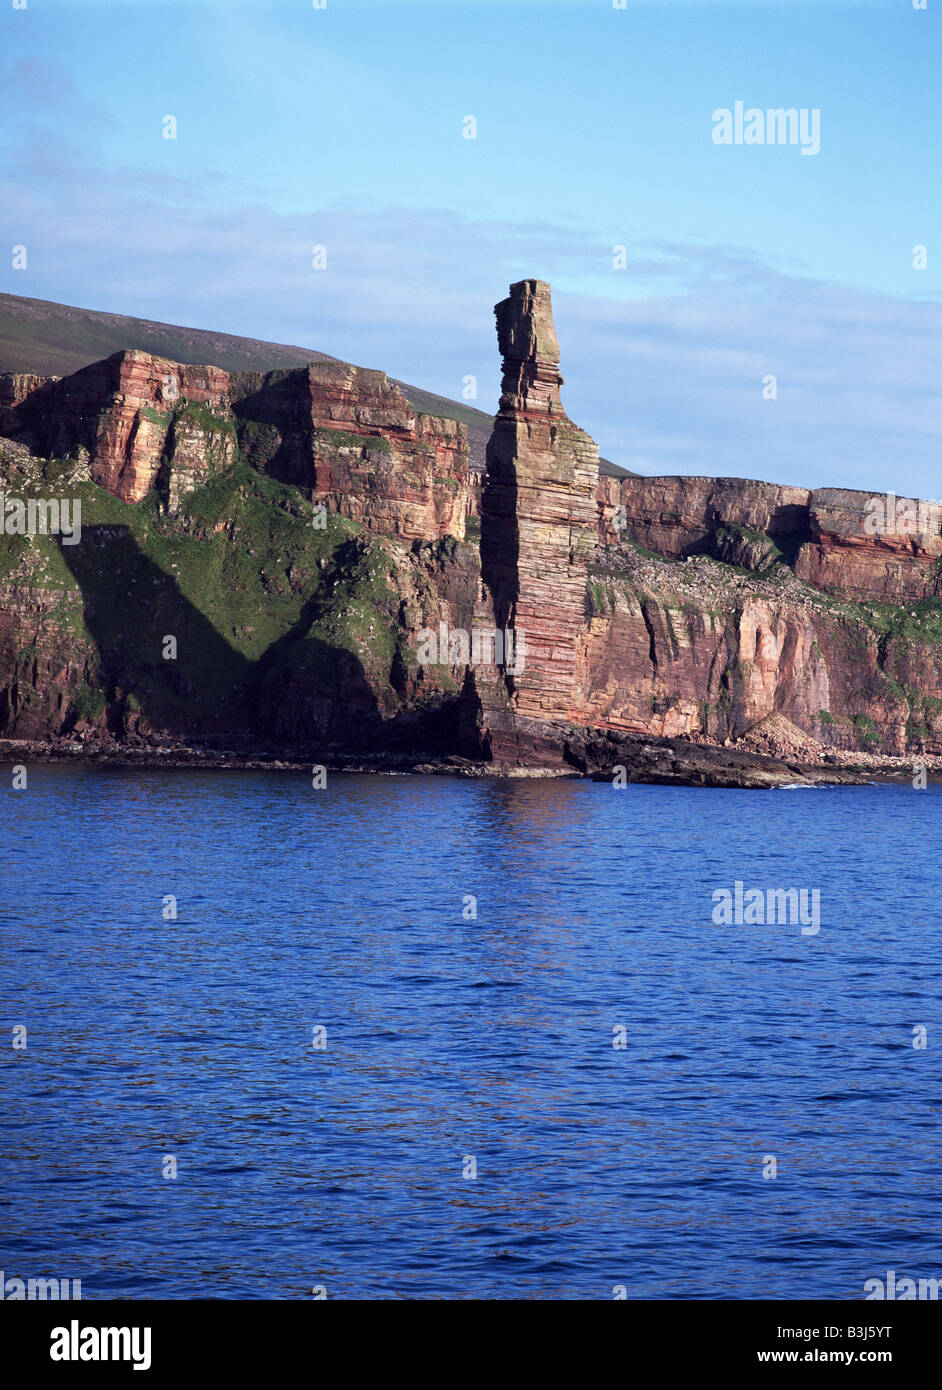 dh Old Man of Hoy Seastack Rock HOY ORKNEY mare stack rosso arenaria scogliere atlantiche costa Scozia punto di riferimento devonian era paleozoic periodo basalto Foto Stock